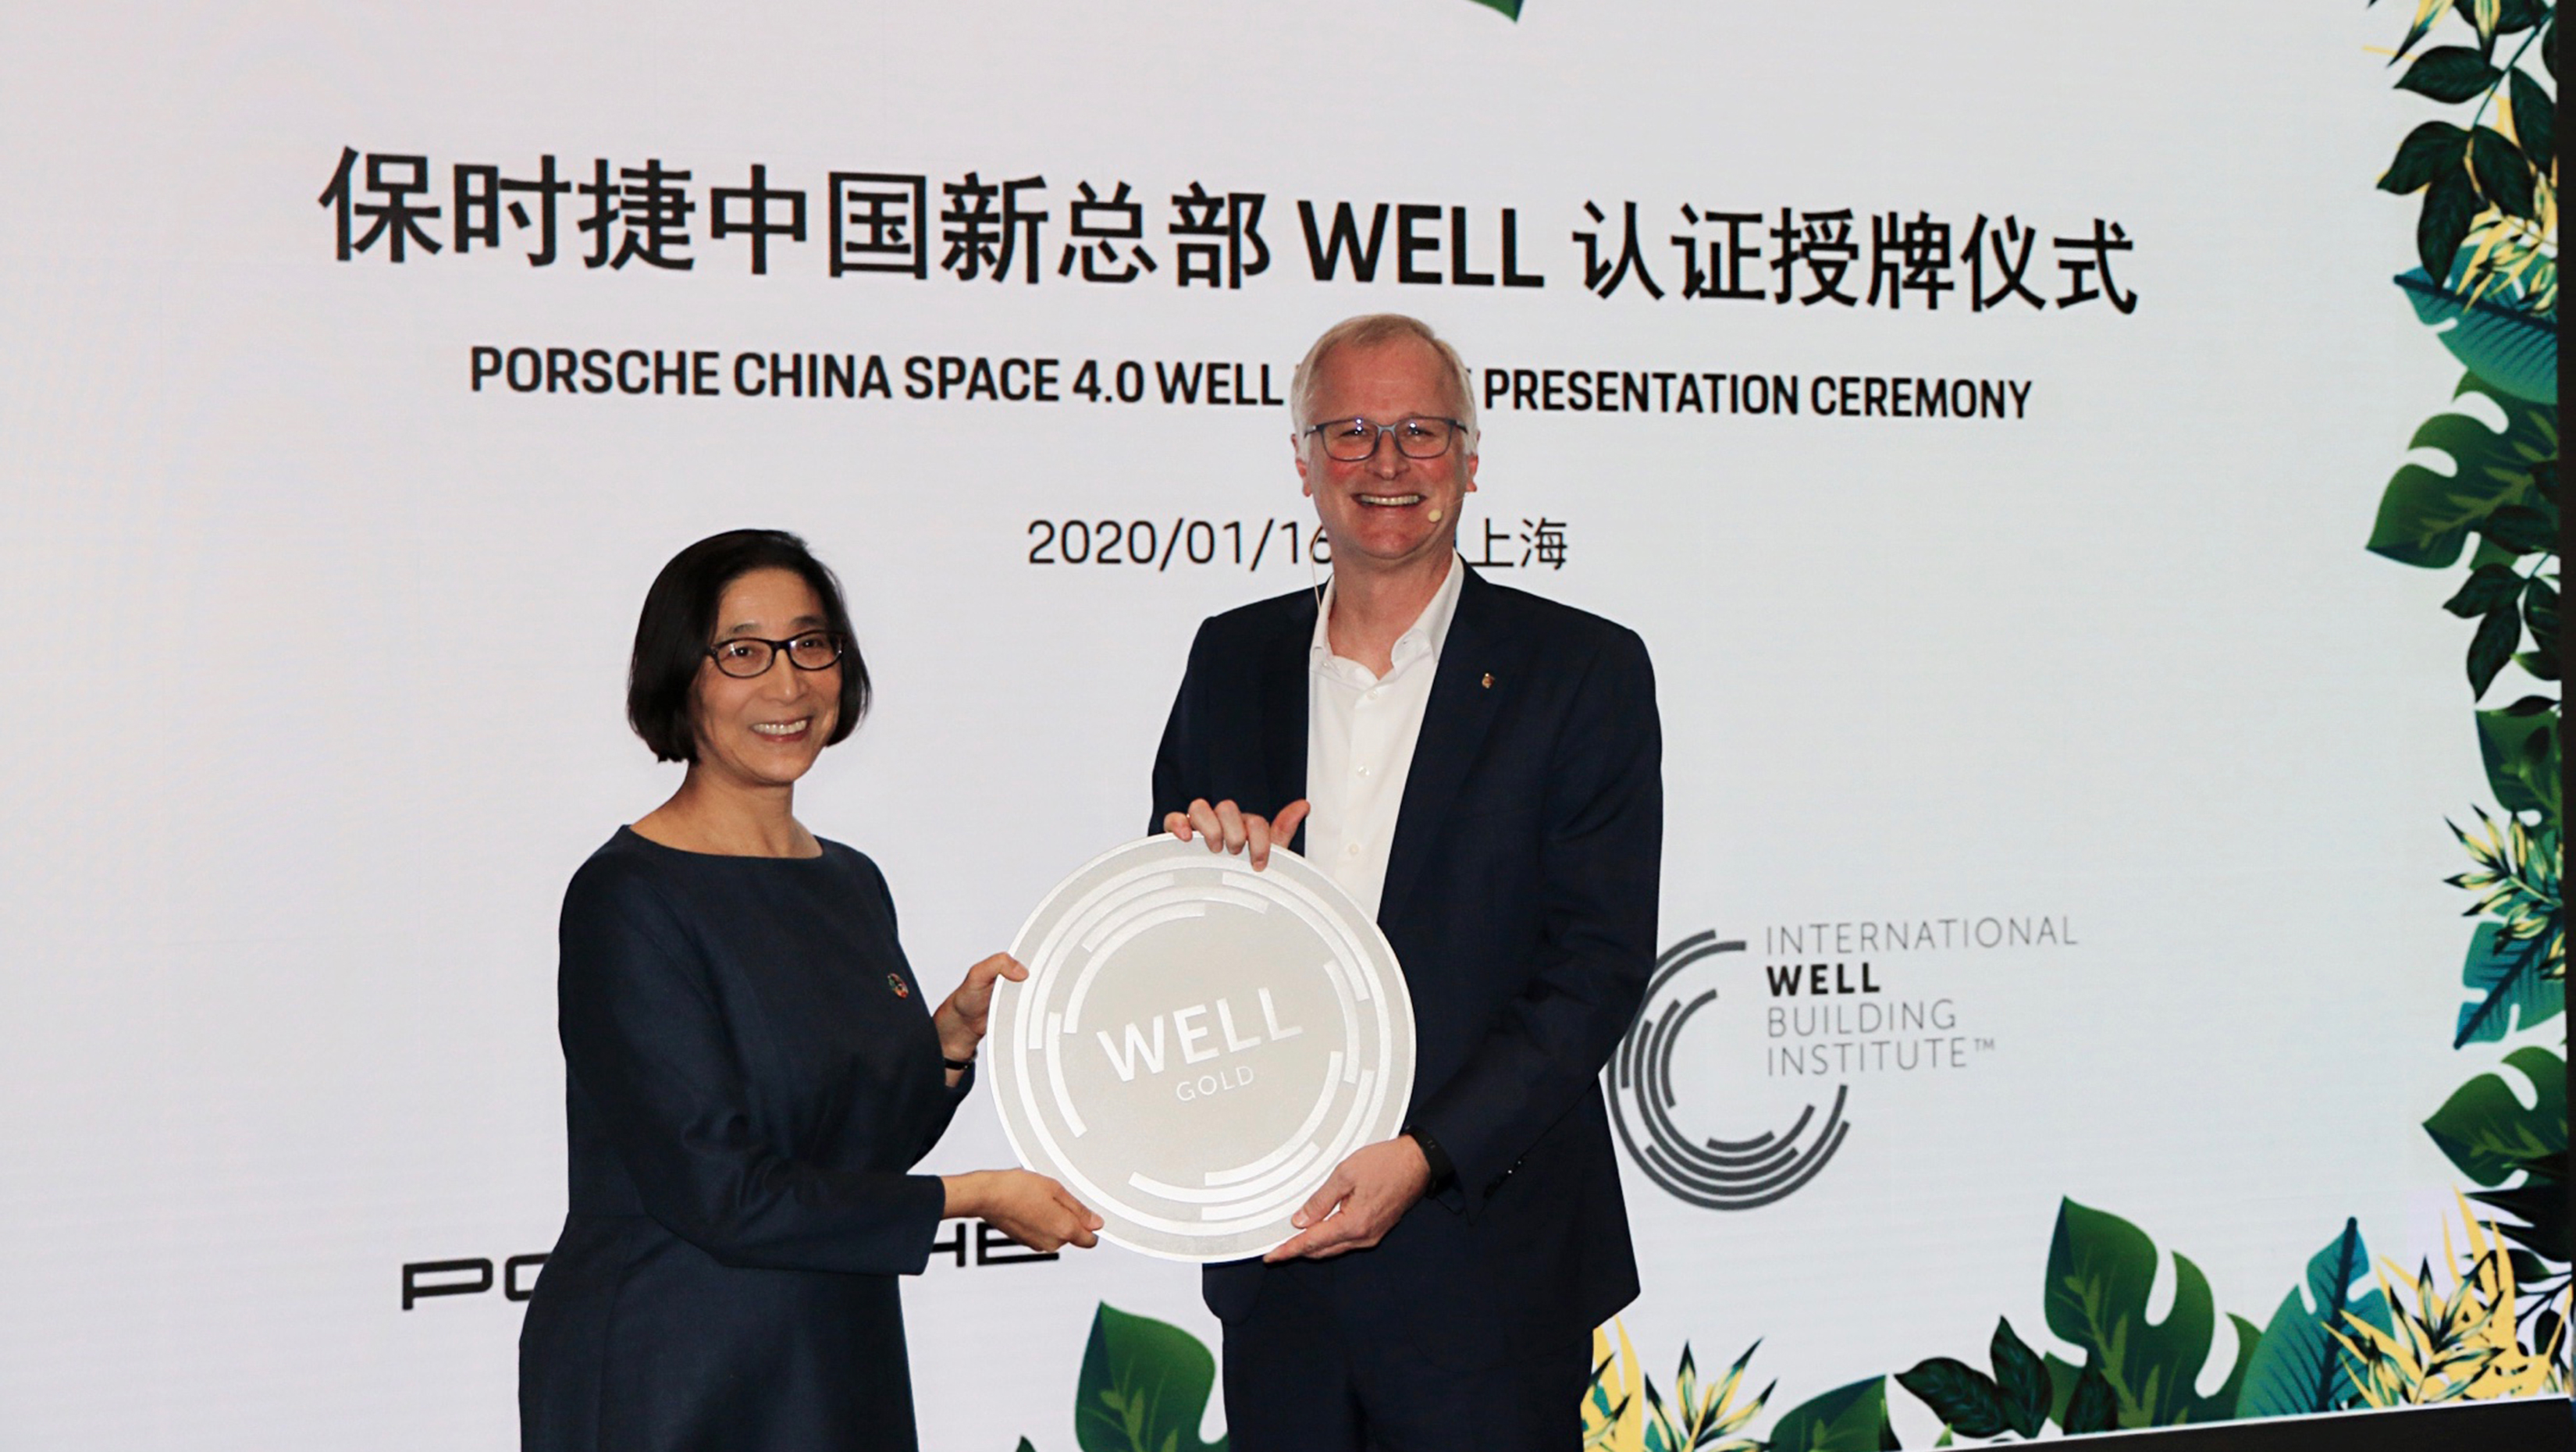 IWBI 亚洲区总裁雪娅女士为保时捷中国颁发金级 WELL 认证奖牌